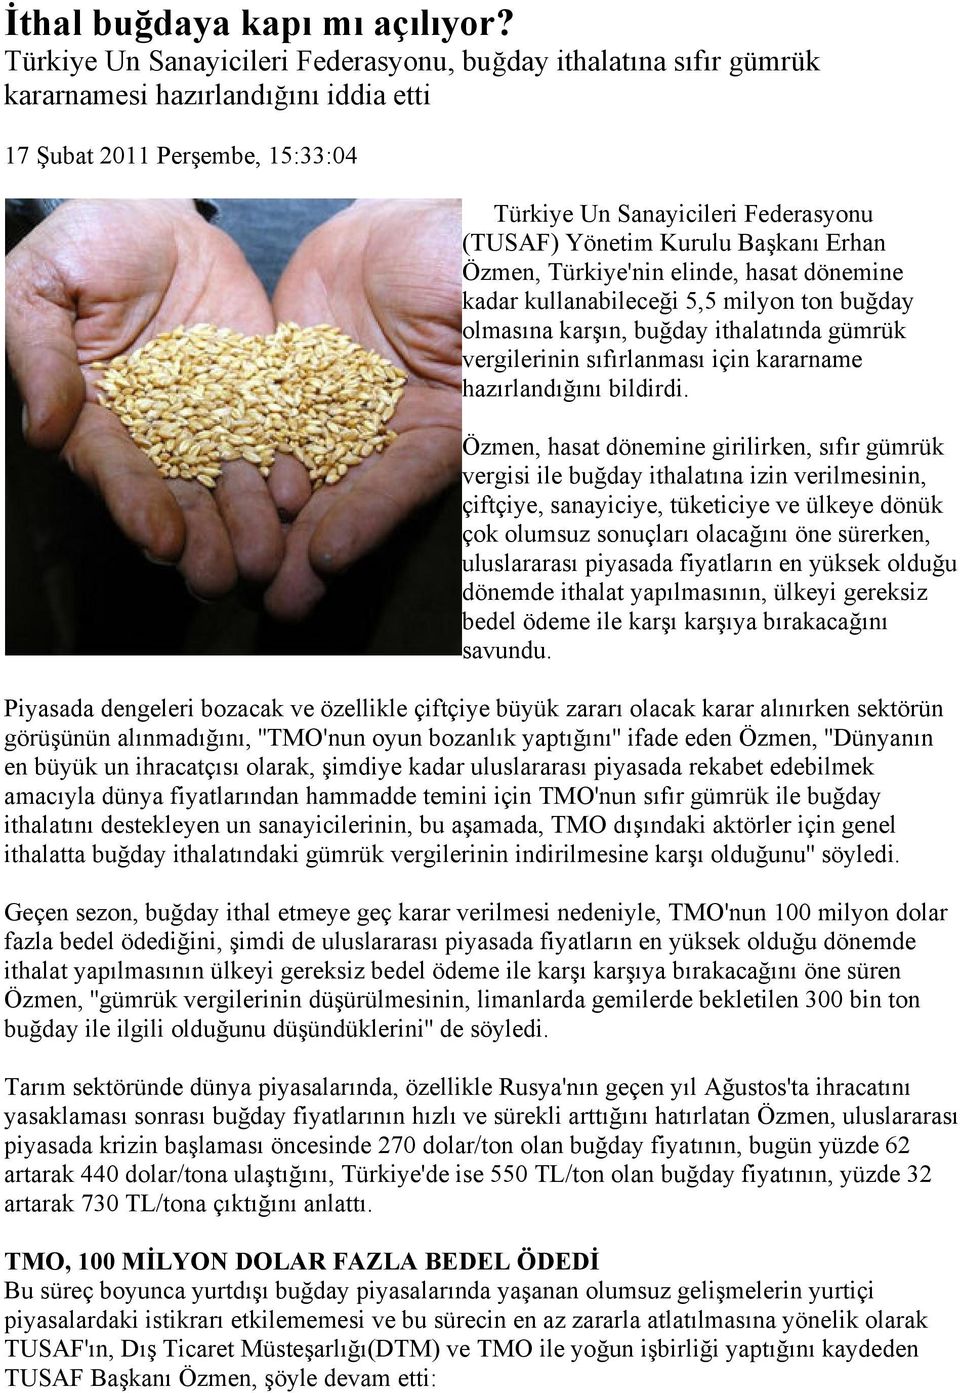 Başkanı Erhan Özmen, Türkiye'nin elinde, hasat dönemine kadar kullanabileceği 5,5 milyon ton buğday olmasına karşın, buğday ithalatında gümrük vergilerinin sıfırlanması için kararname hazırlandığını